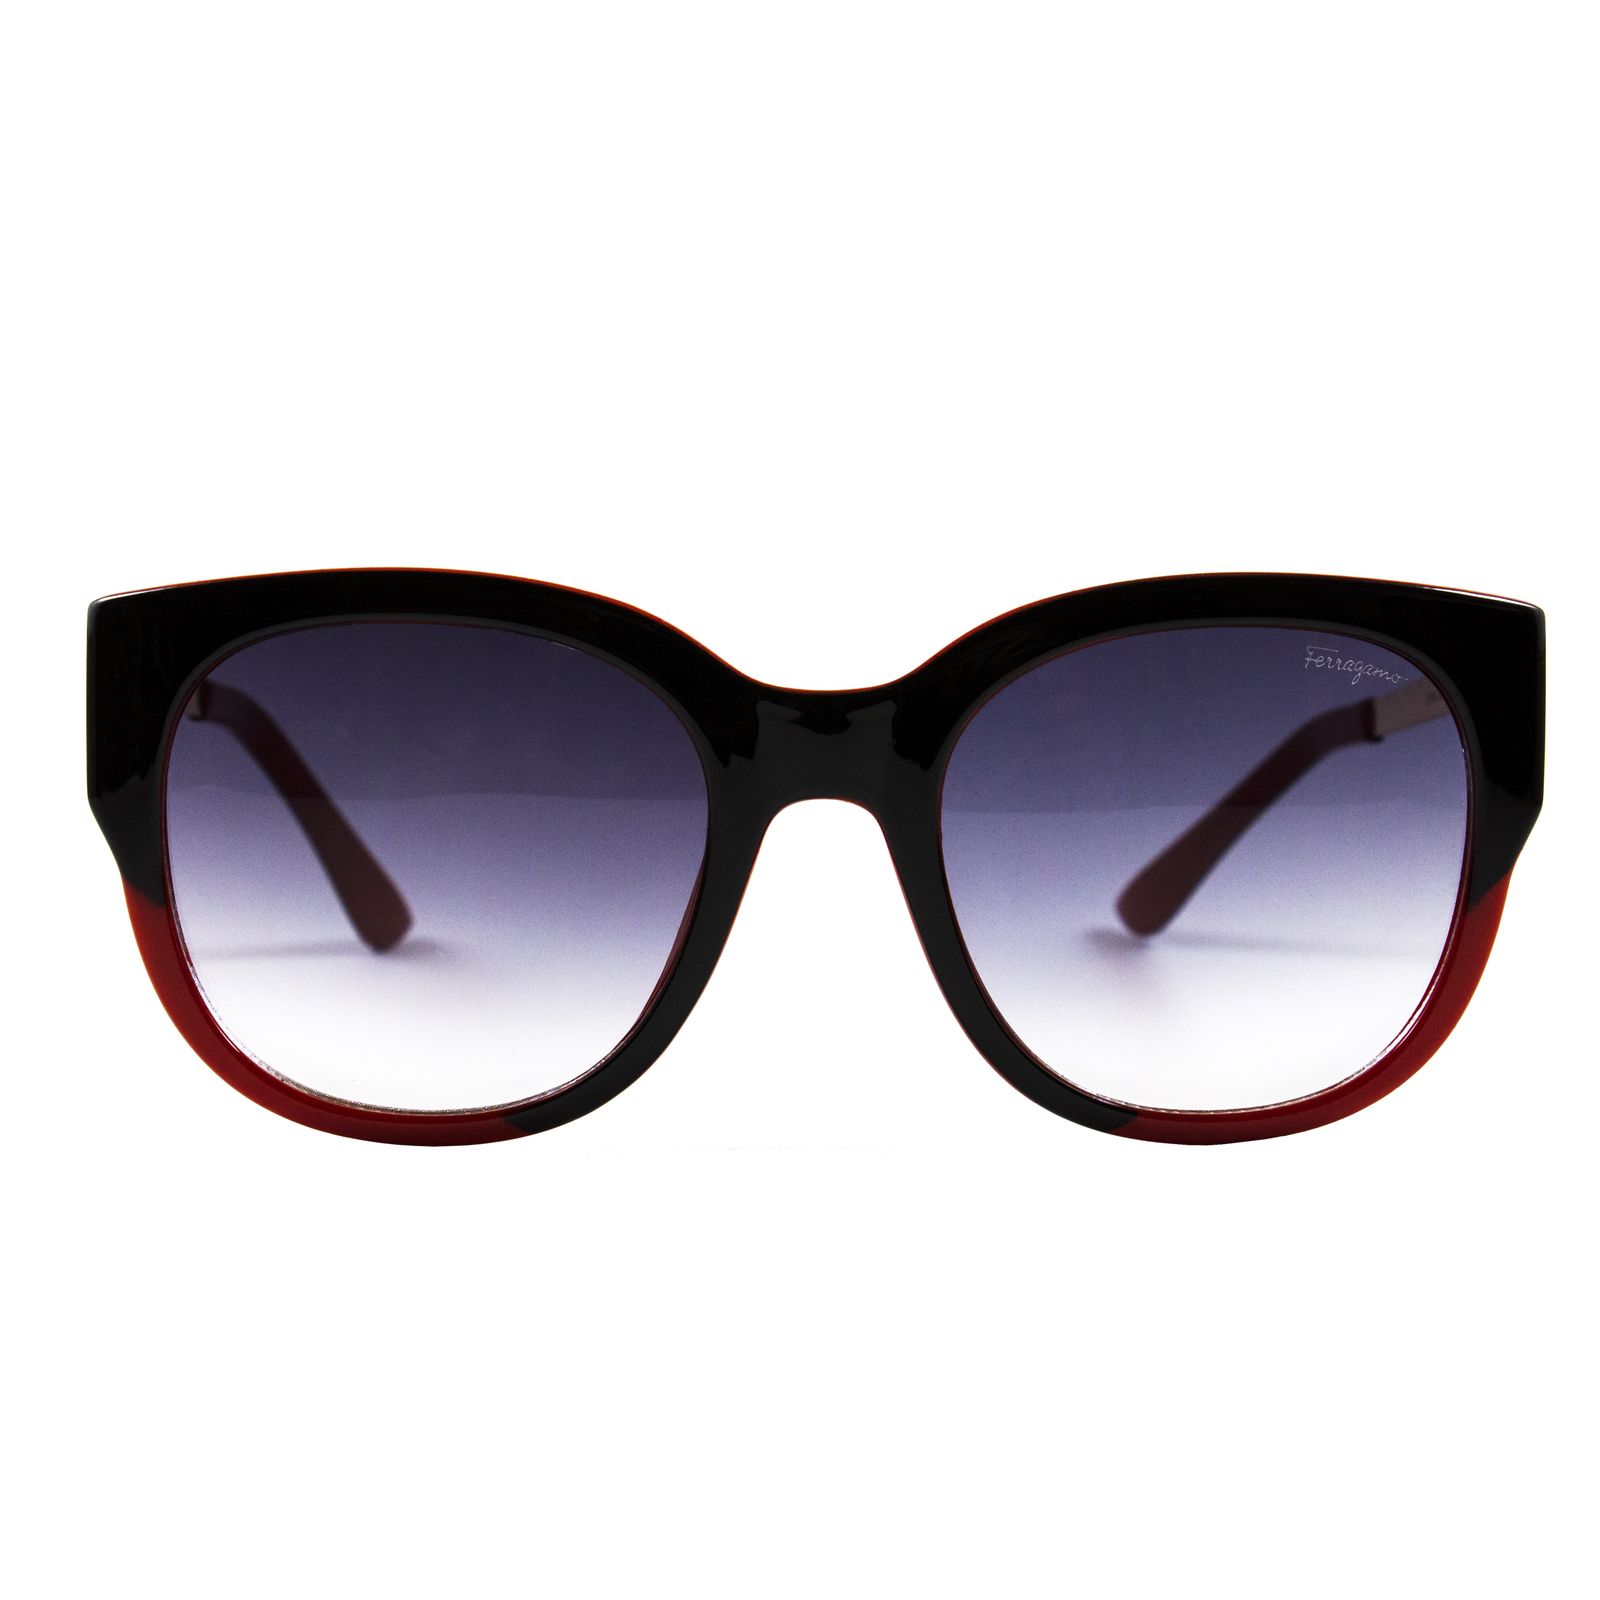 عینک آفتابی سالواتوره فراگامو مدل A SF86 53-20-129 -  - 3